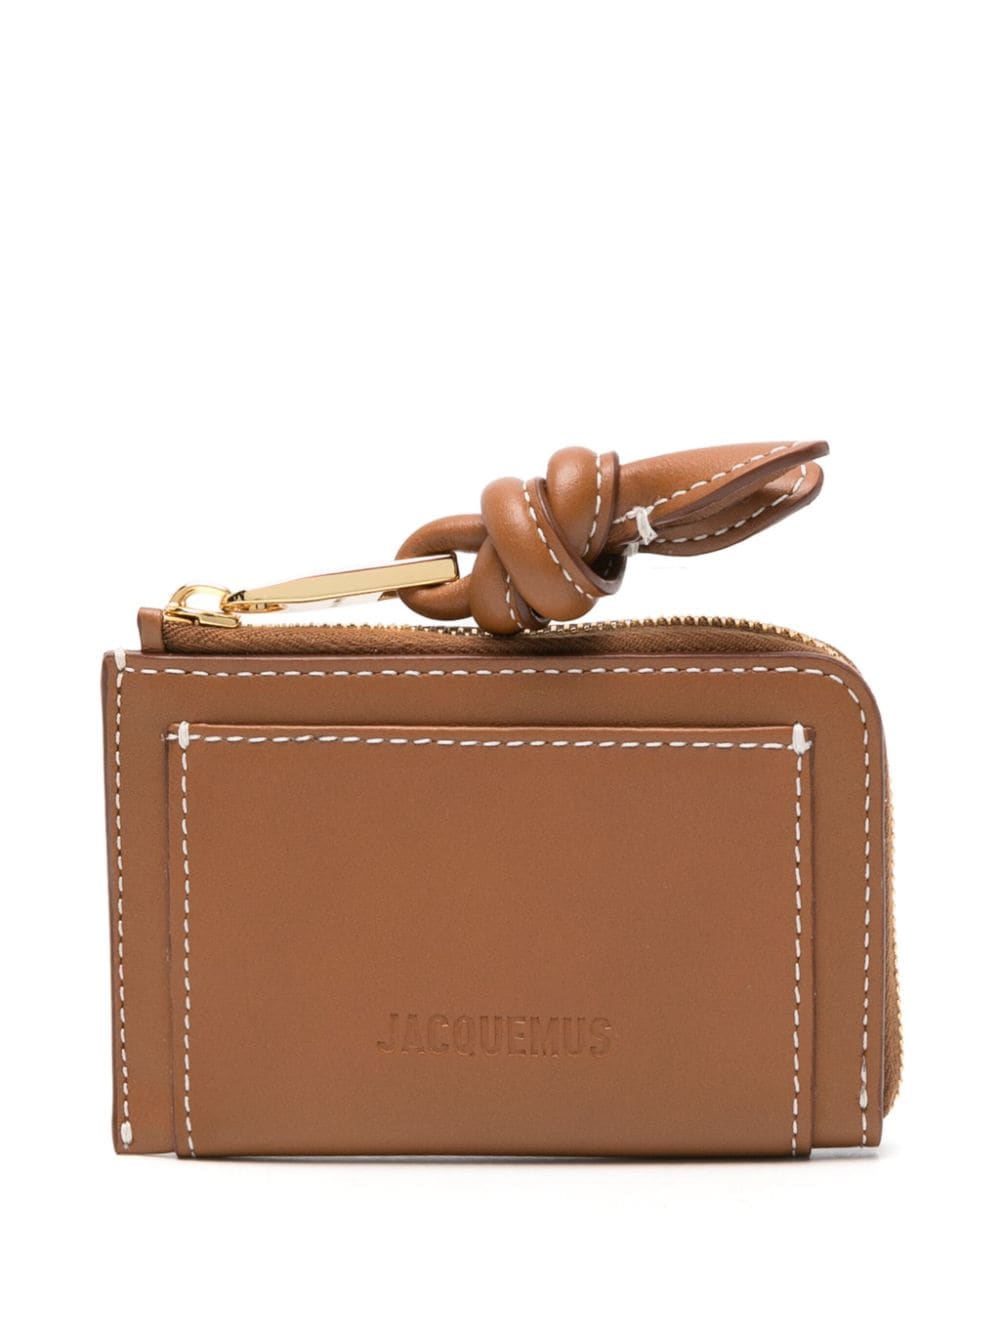 Le Porte-Cartes Tourni leather wallet